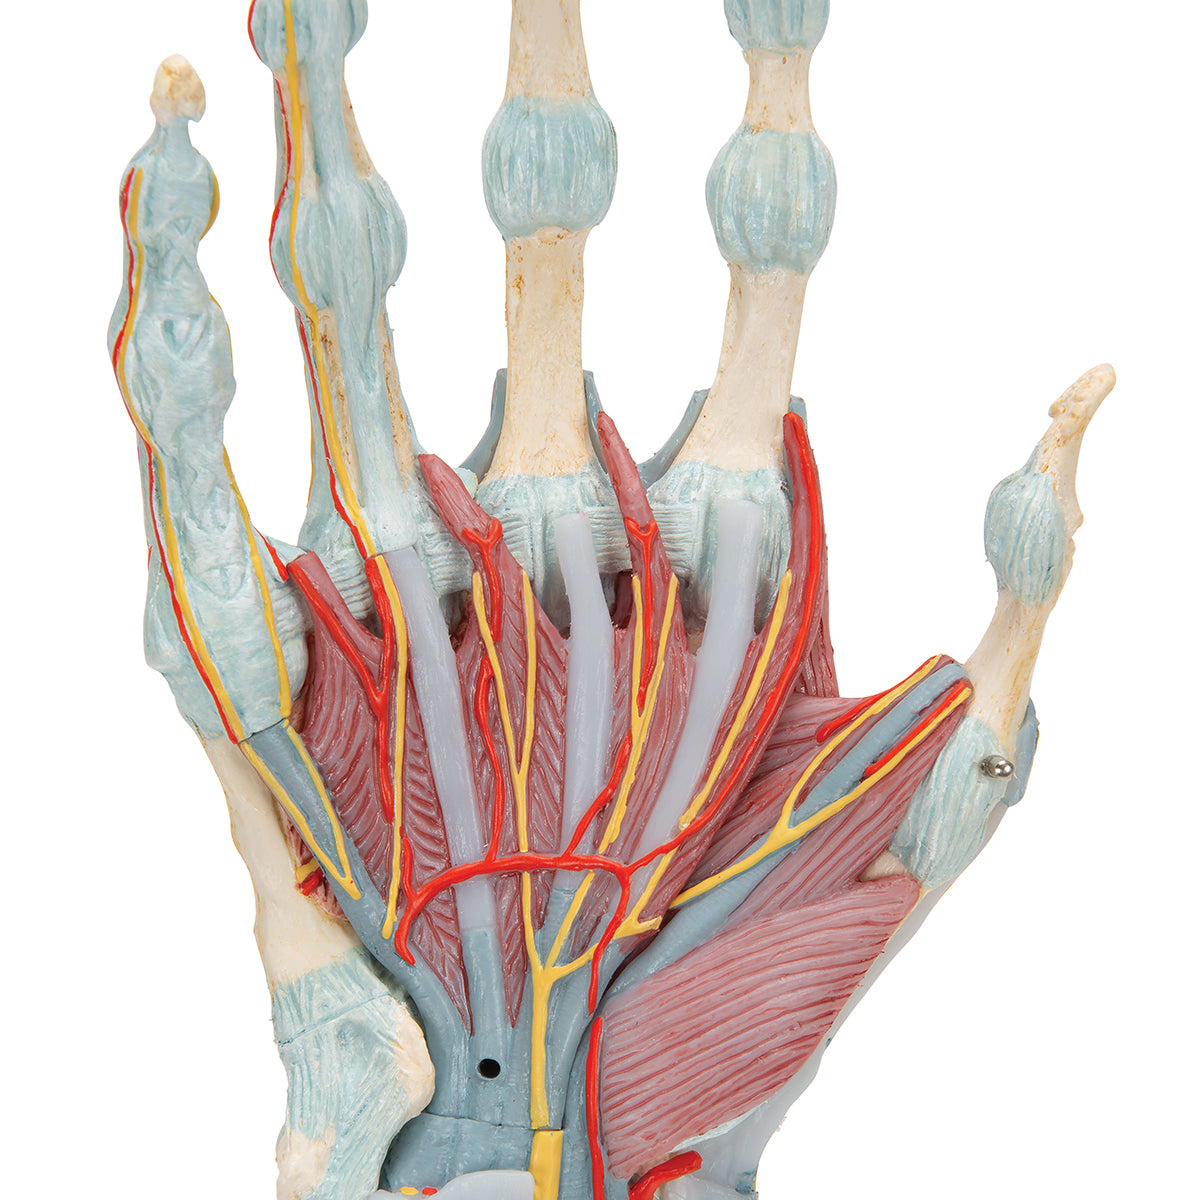 Komplett handmodell med ligament, muskler, senor, kärl och nerver - kan delas upp i 4 delar